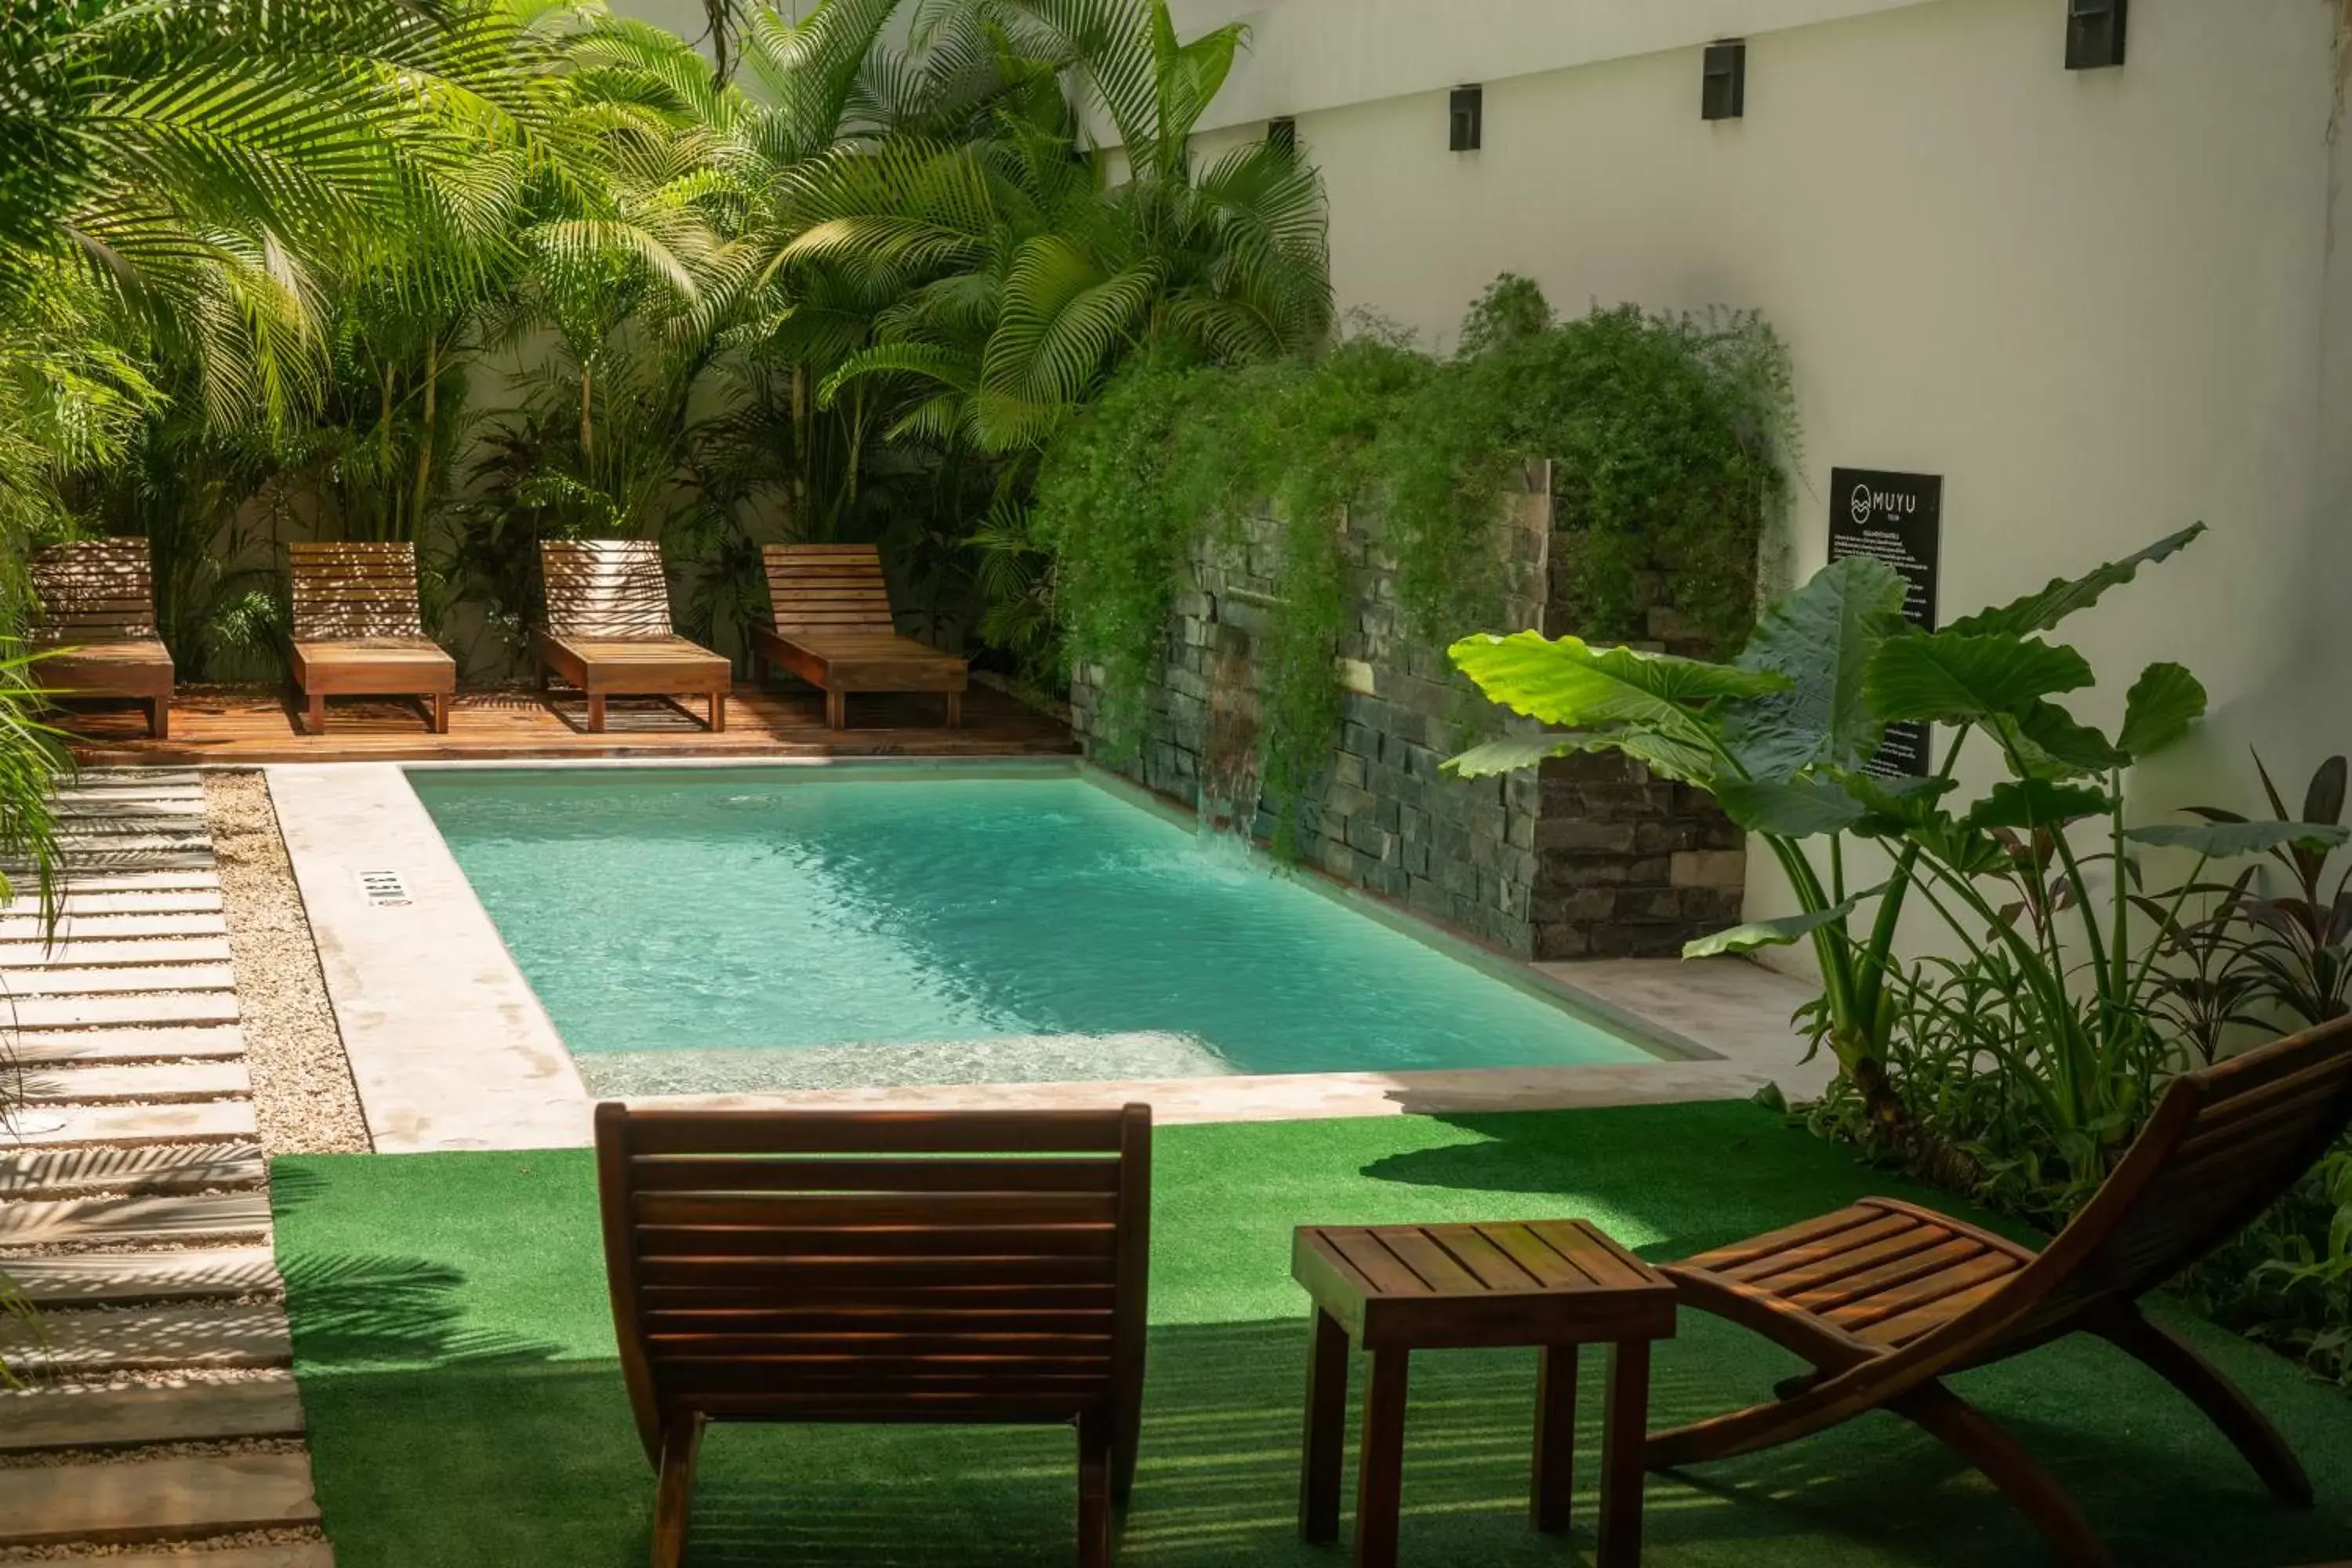 Swimming Pool in Hotel Muyu Tulum